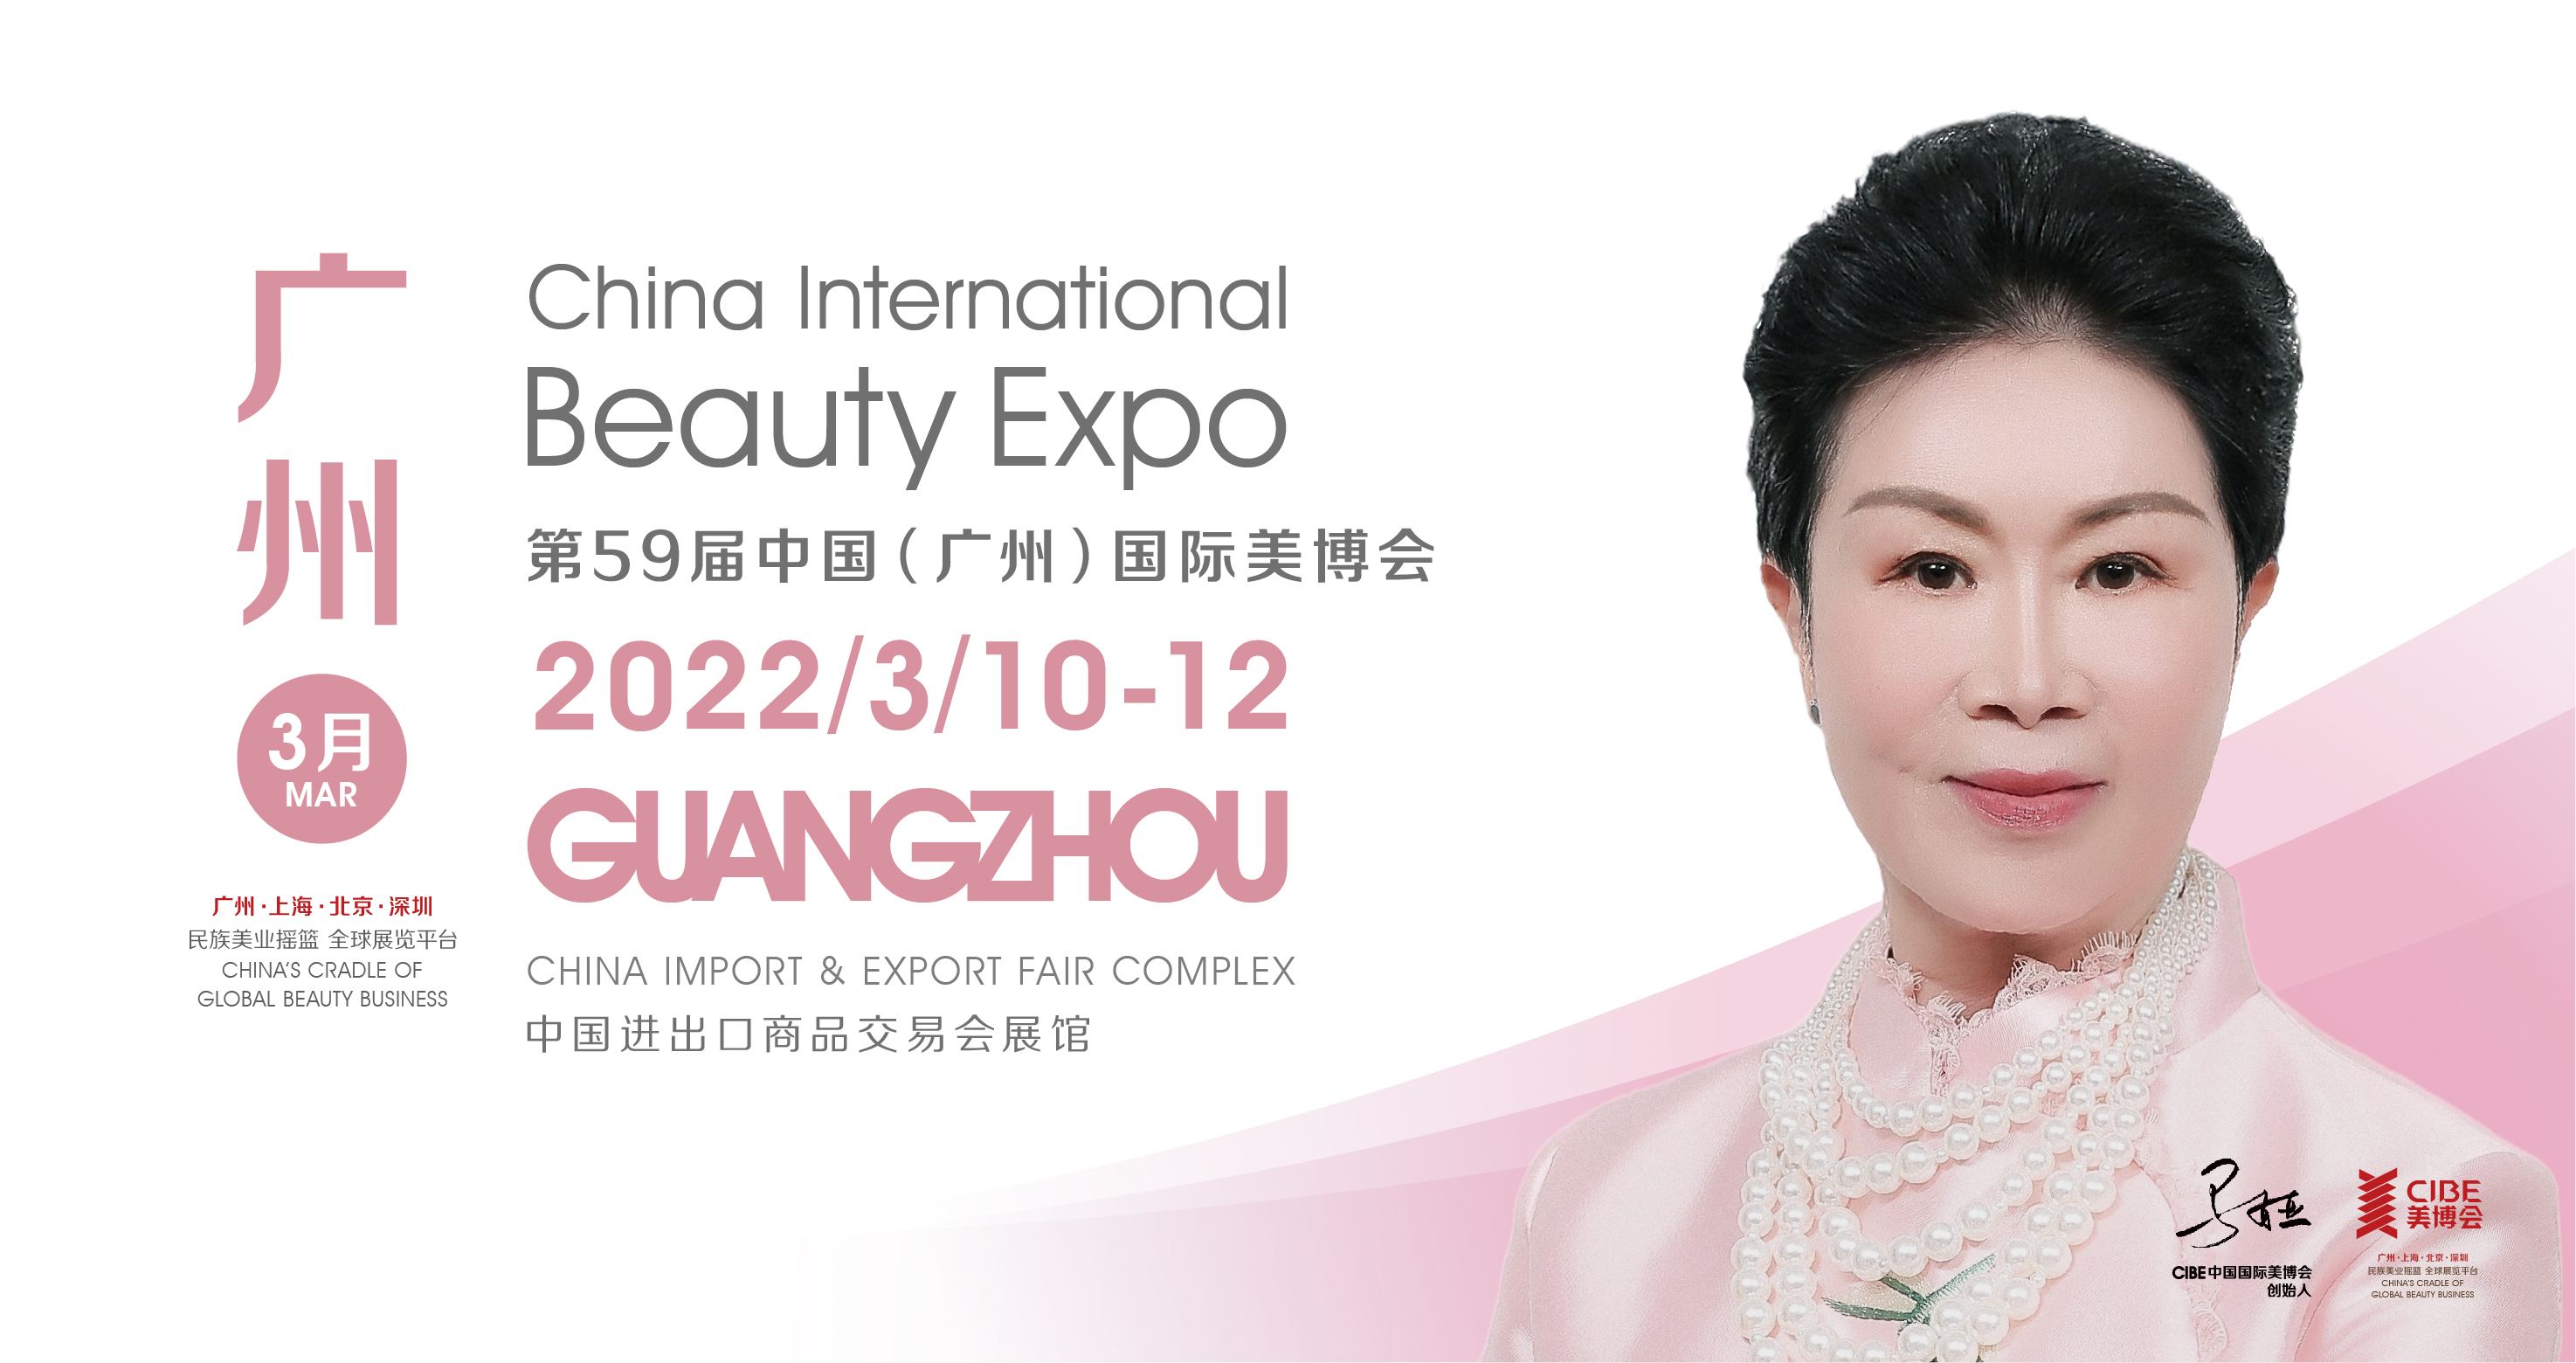 59. Međunarodni sajam ljepote u Kini (Guangzhou) 2022